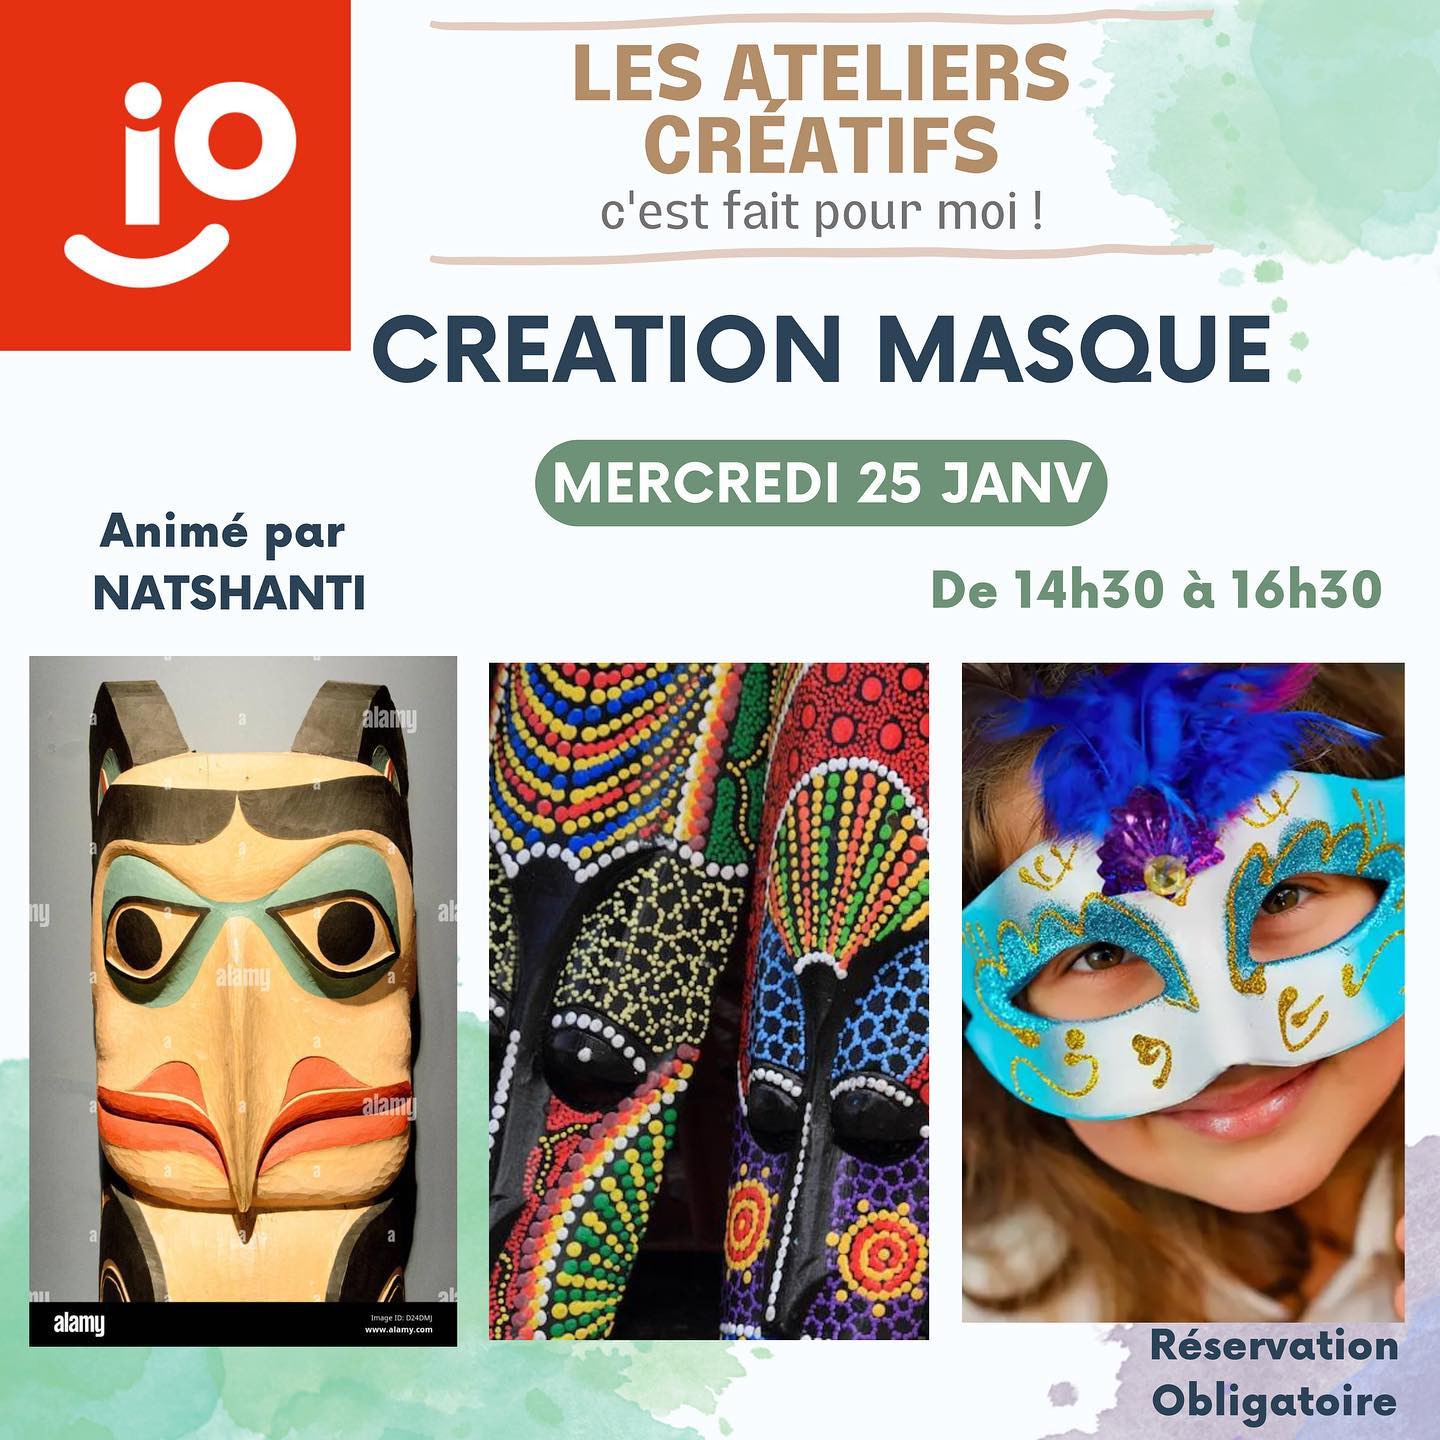 Atelier Création de masques, mercredi 25 janvier de 14h30 à 16h30 ! 🎉